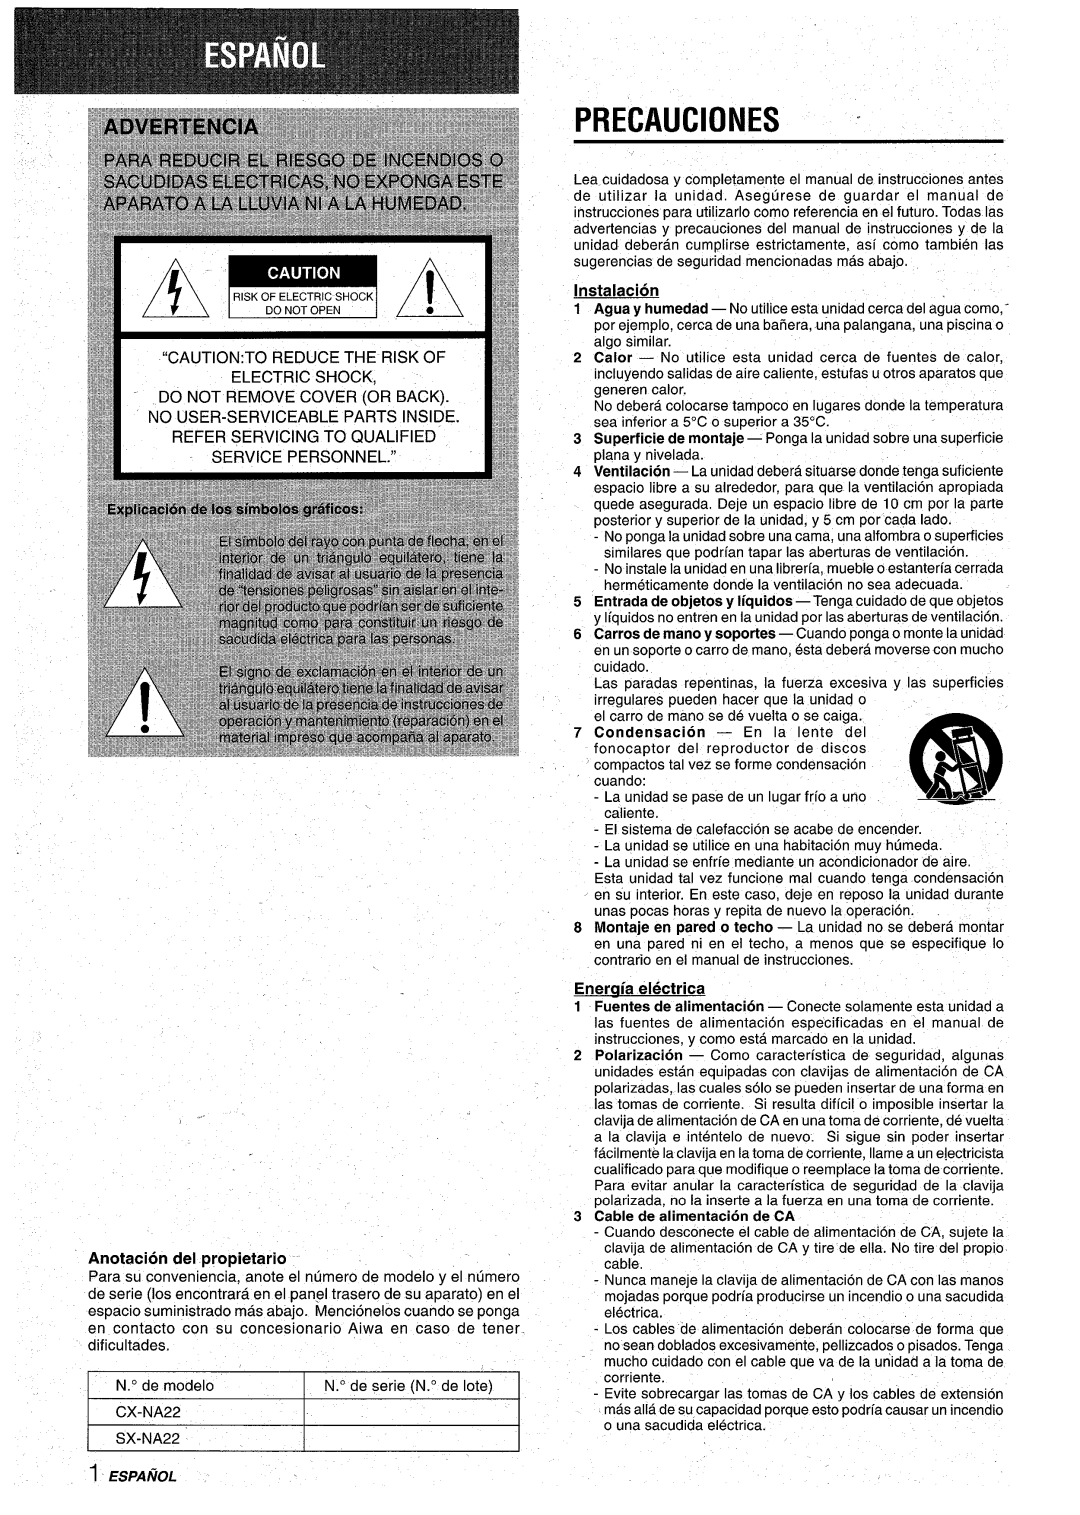 Aiwa CX-NA22 manual Precauciones, Anotacion del propietario, Instalacion, Eneraia electrica, Cable de alimentaci6n de CA 